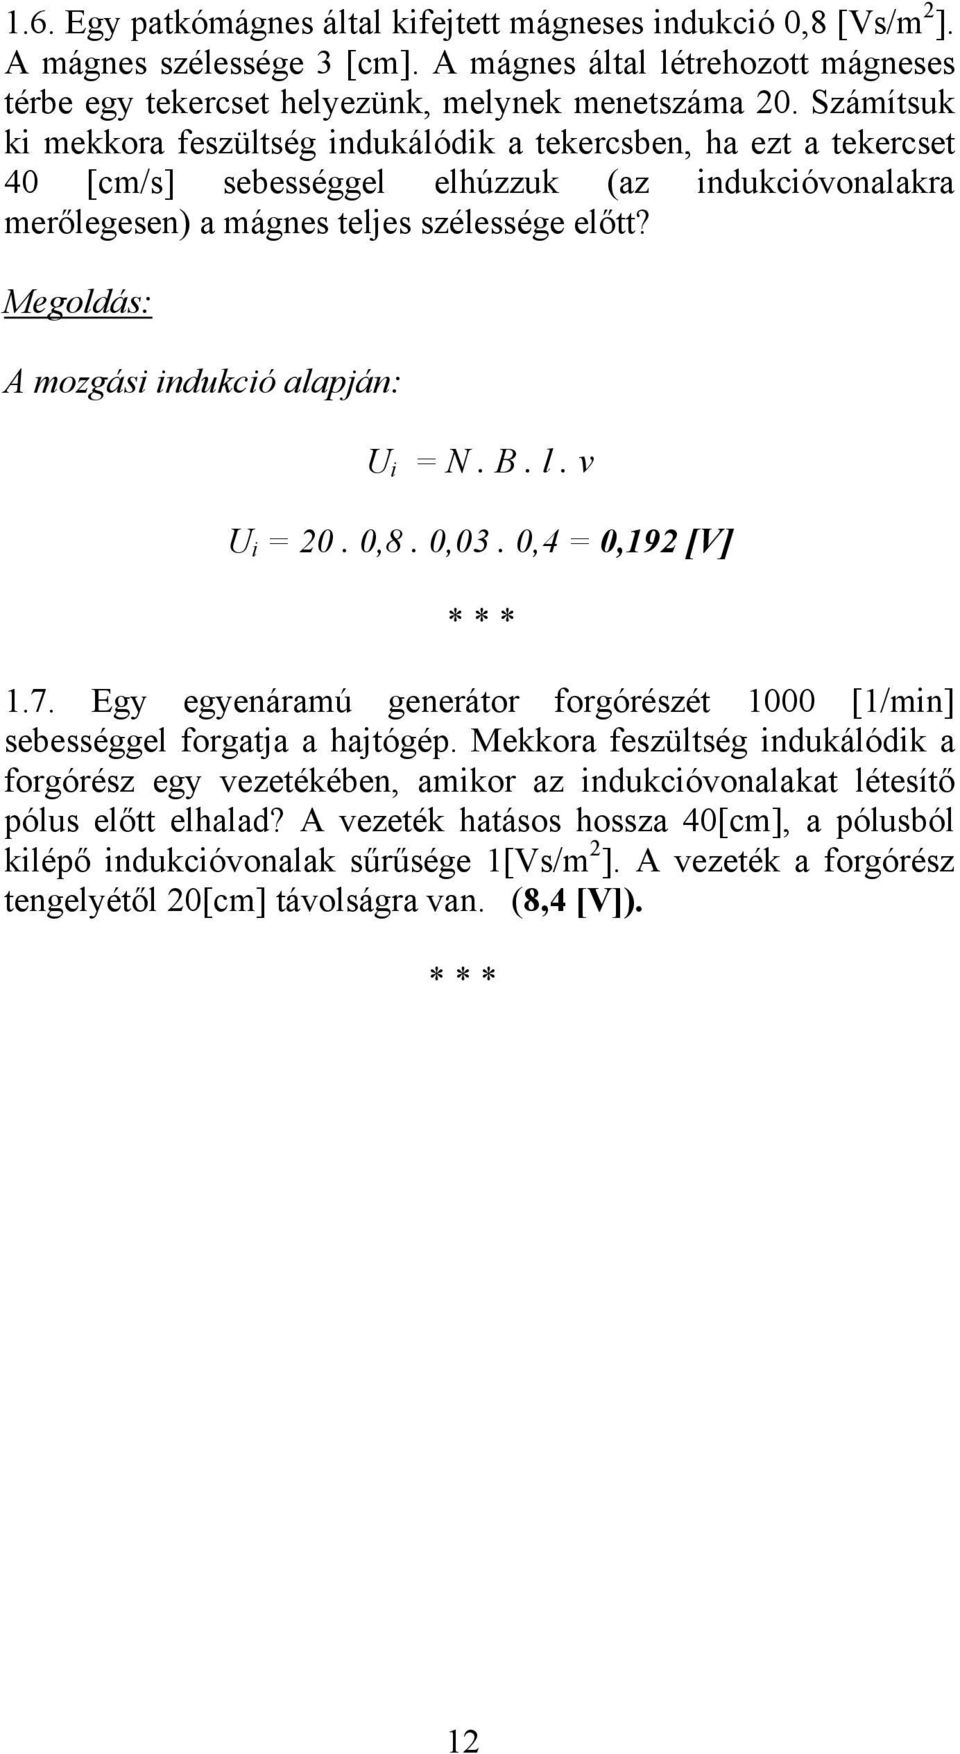 Megoldás: A mozgási indukció alapján: U i = N. B. l. v U i = 20. 0,8. 0,03. 0,4 = 0,192 [V] * * * 1.7. Egy egyenáramú generátor forgórészét 1000 [1/min] sebességgel forgatja a hajtógép.